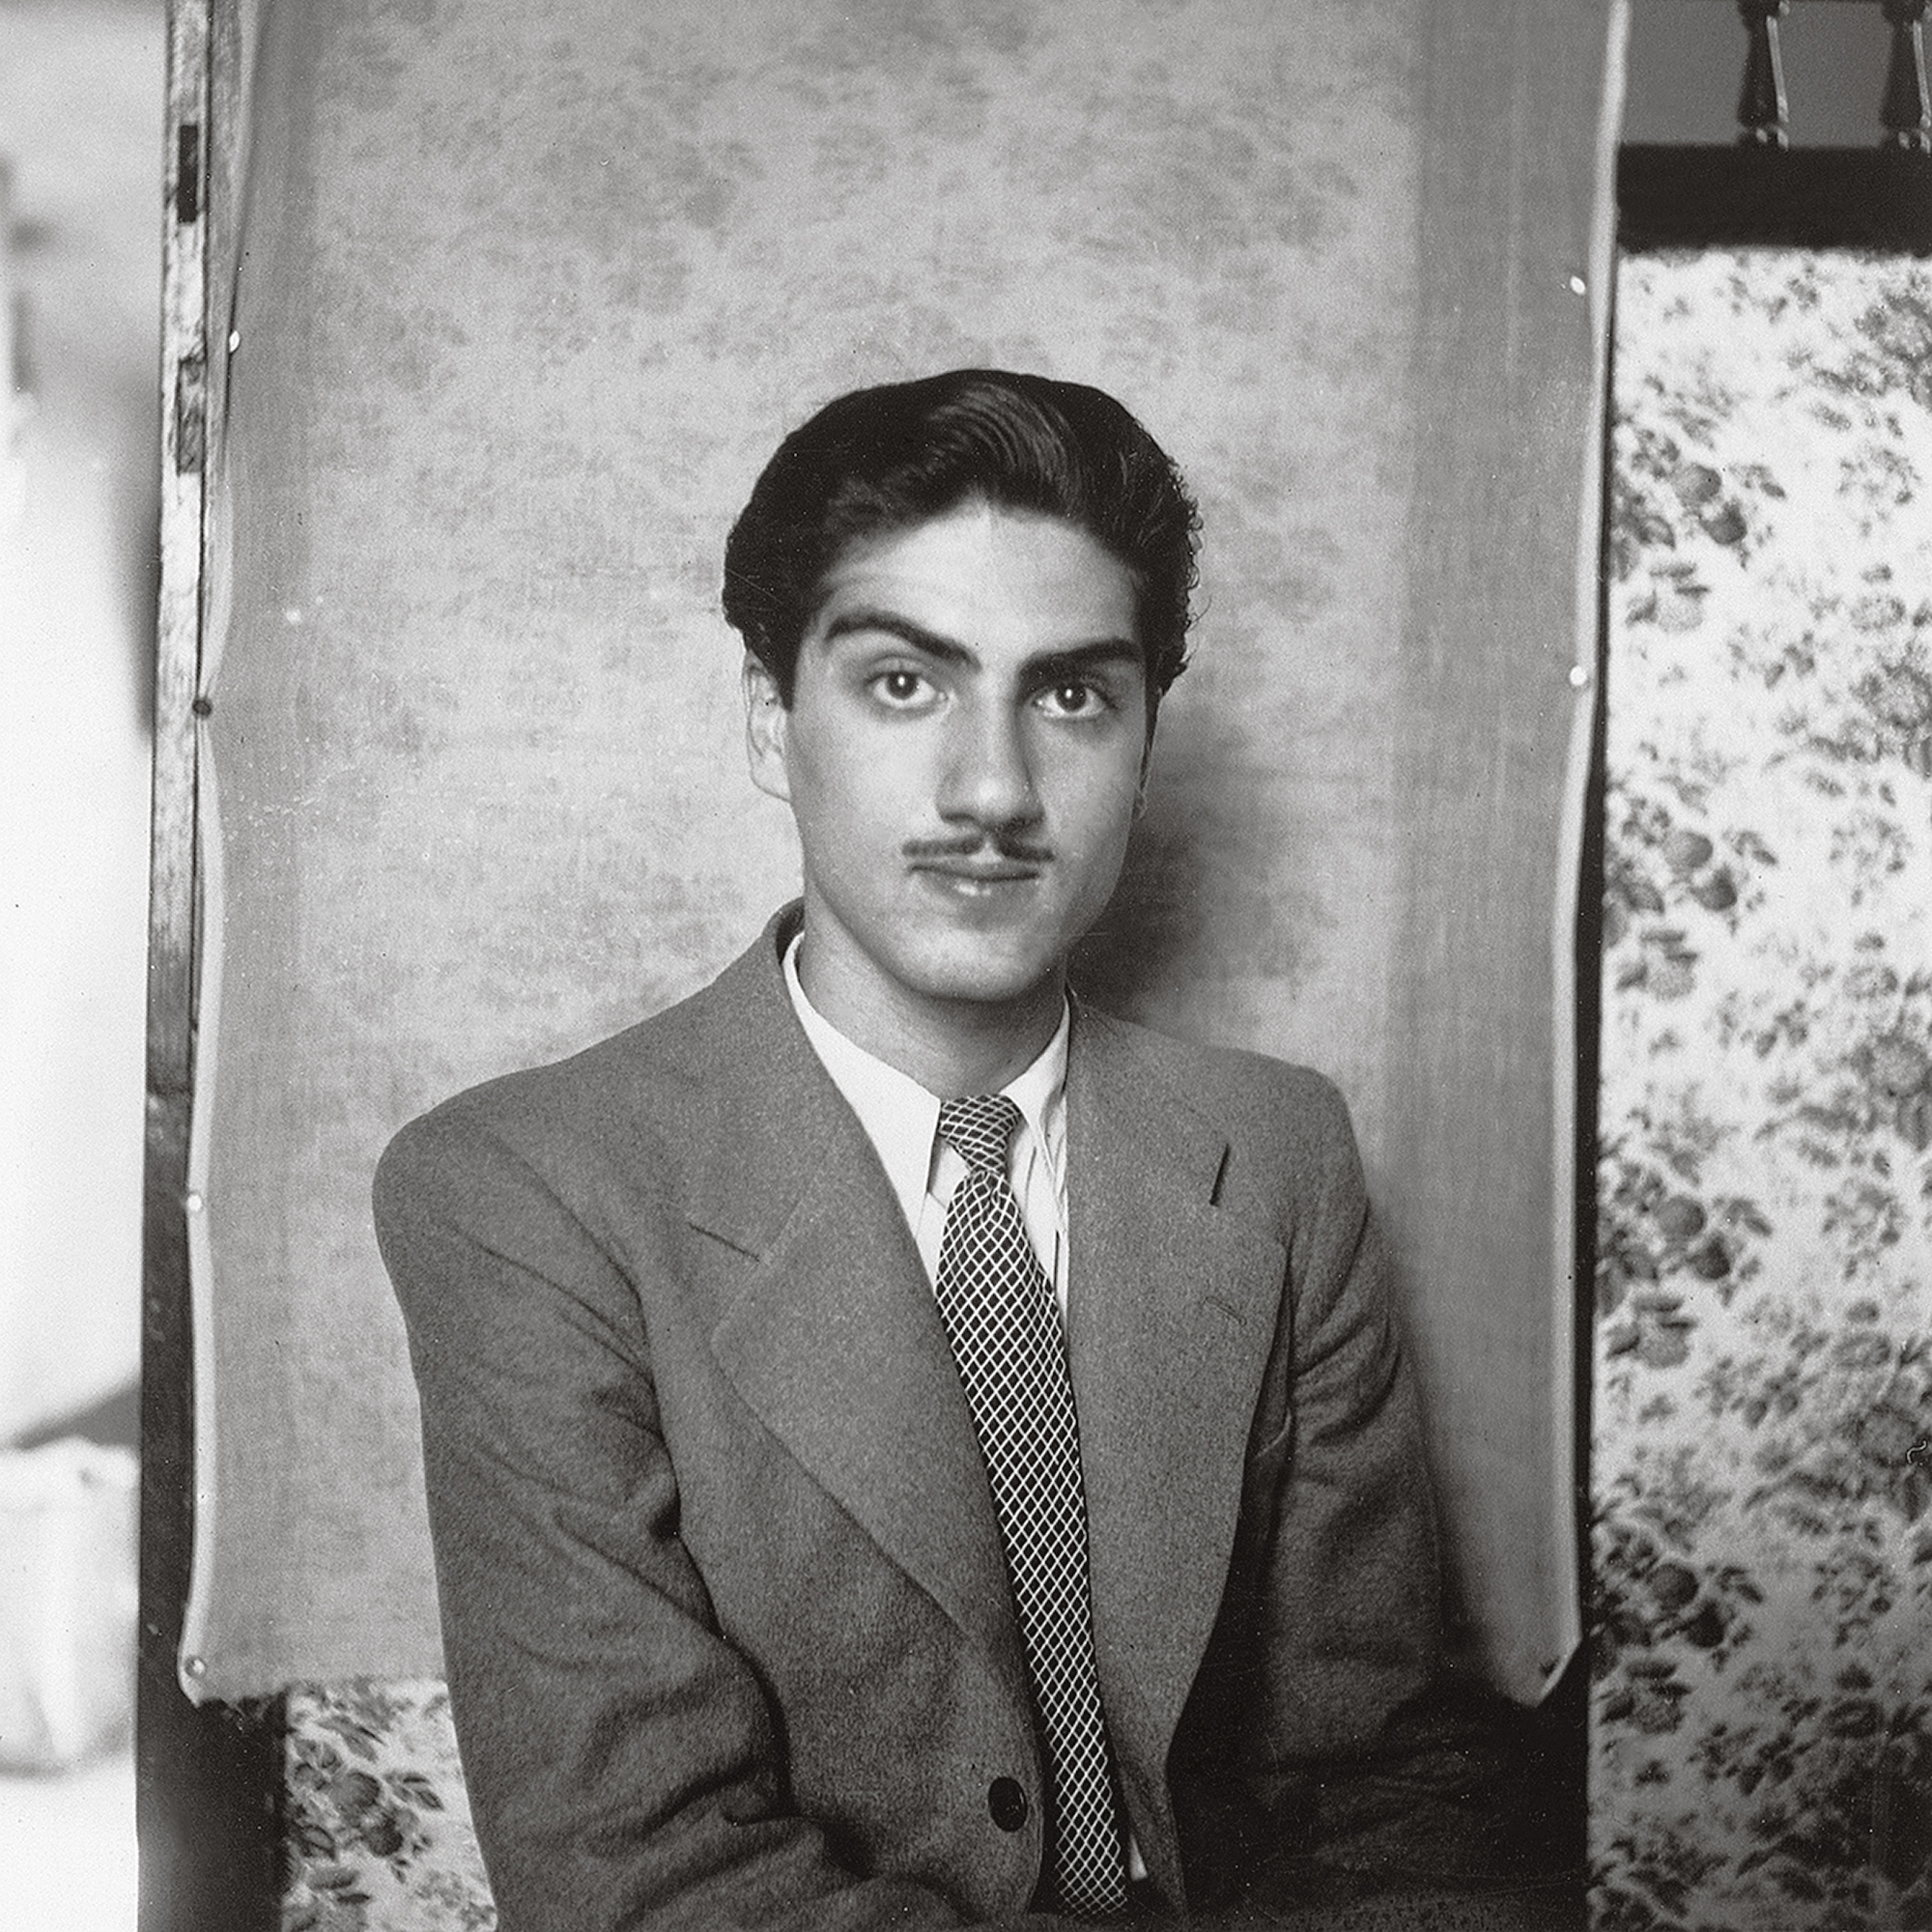 Van Leo, Self-Portraits, Cairo, June 26, 1940